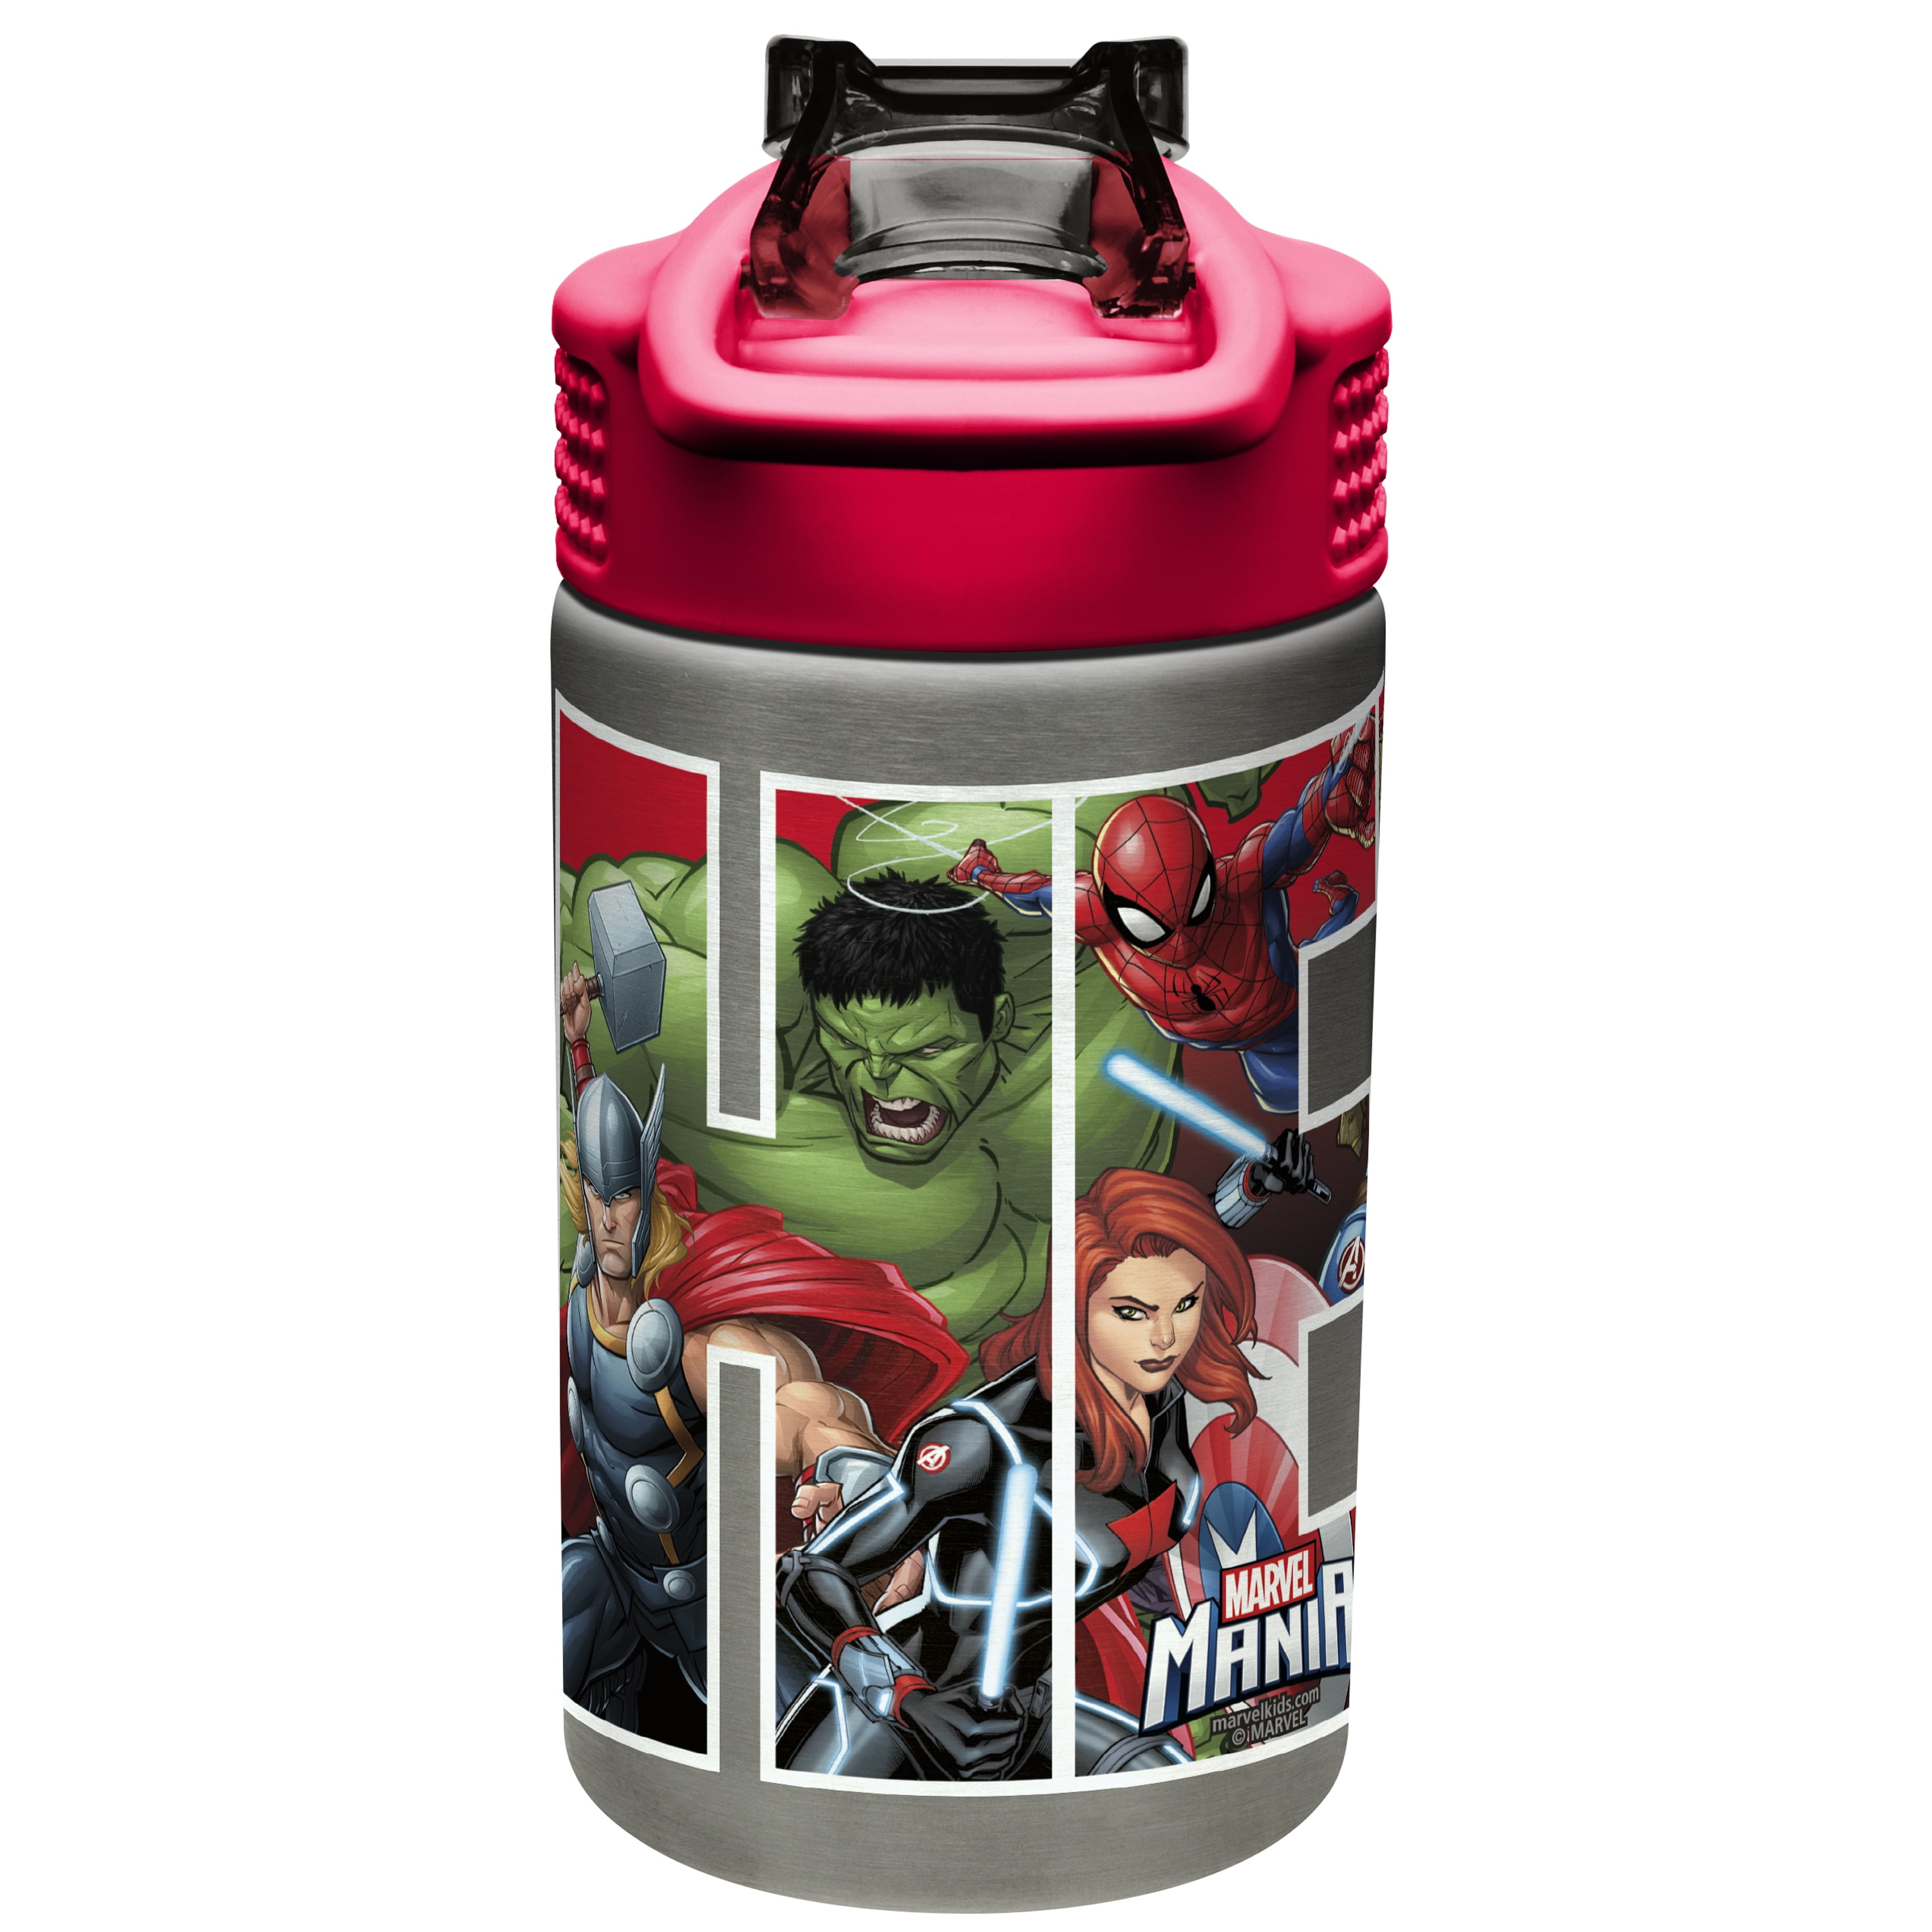 Disney Store Marvel's Avengers Water Bottle